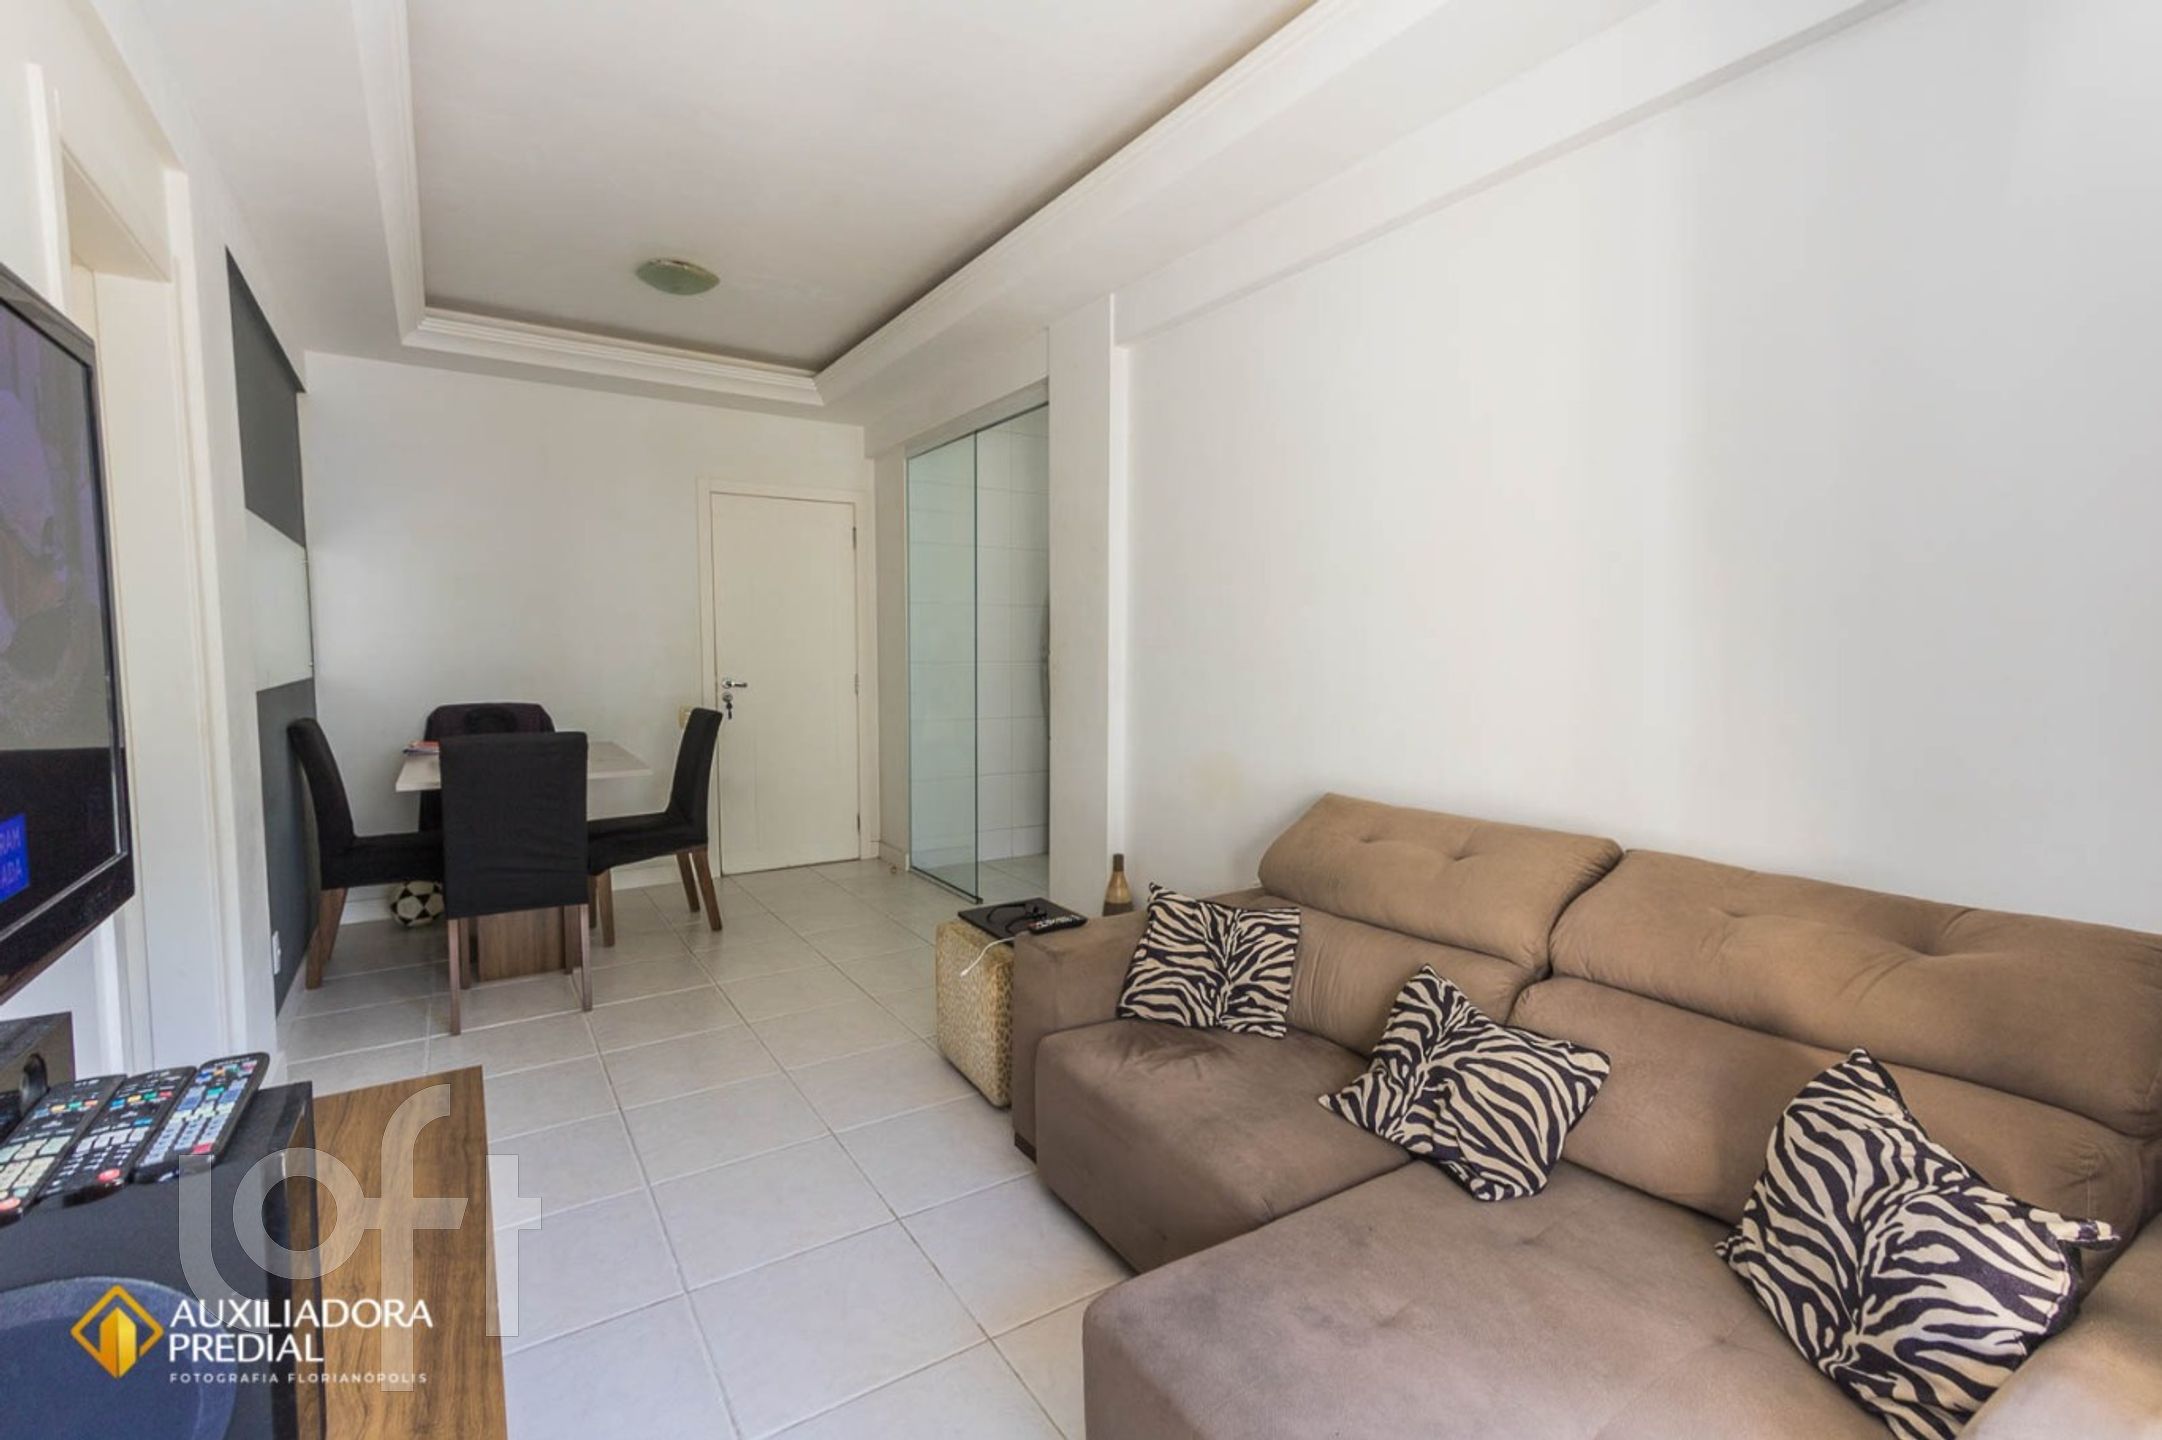 VENDA &#8211; Apartamento de 2 quartos no bairro Itacorubi, Florianópolis &#8211; PU183wc7w